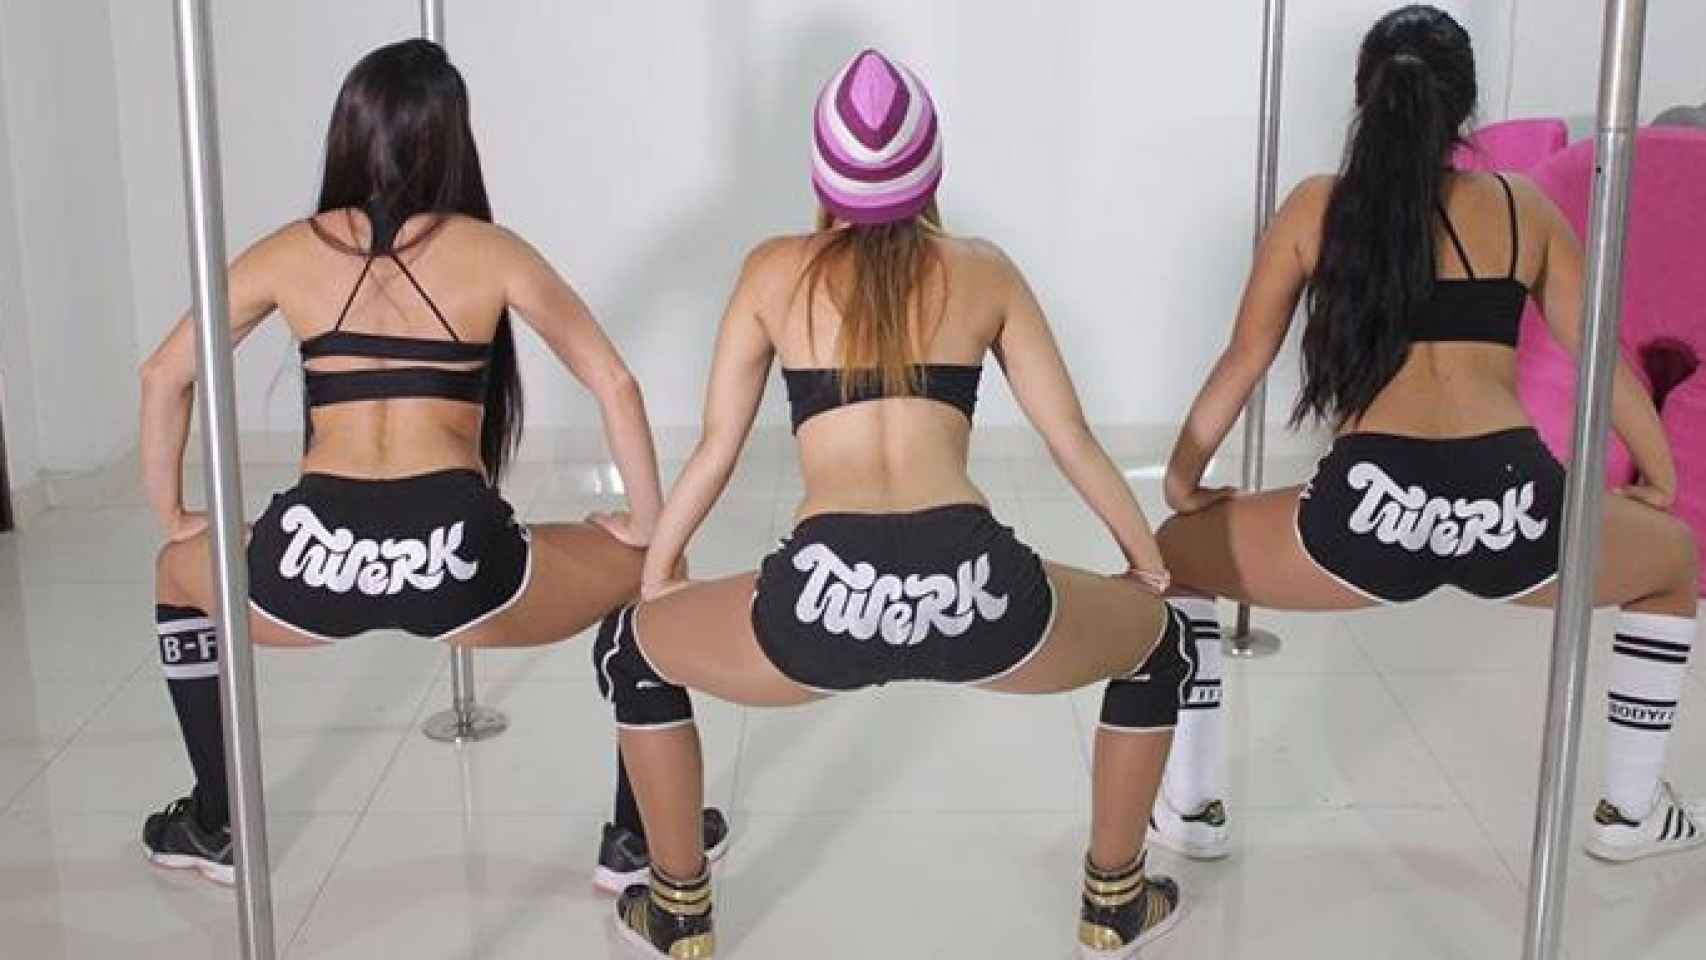 Tres chicas bailan 'twerking', un baile parecido al 'perreo' del reguetón consistente en sensuales movimientos pélvicos / CG